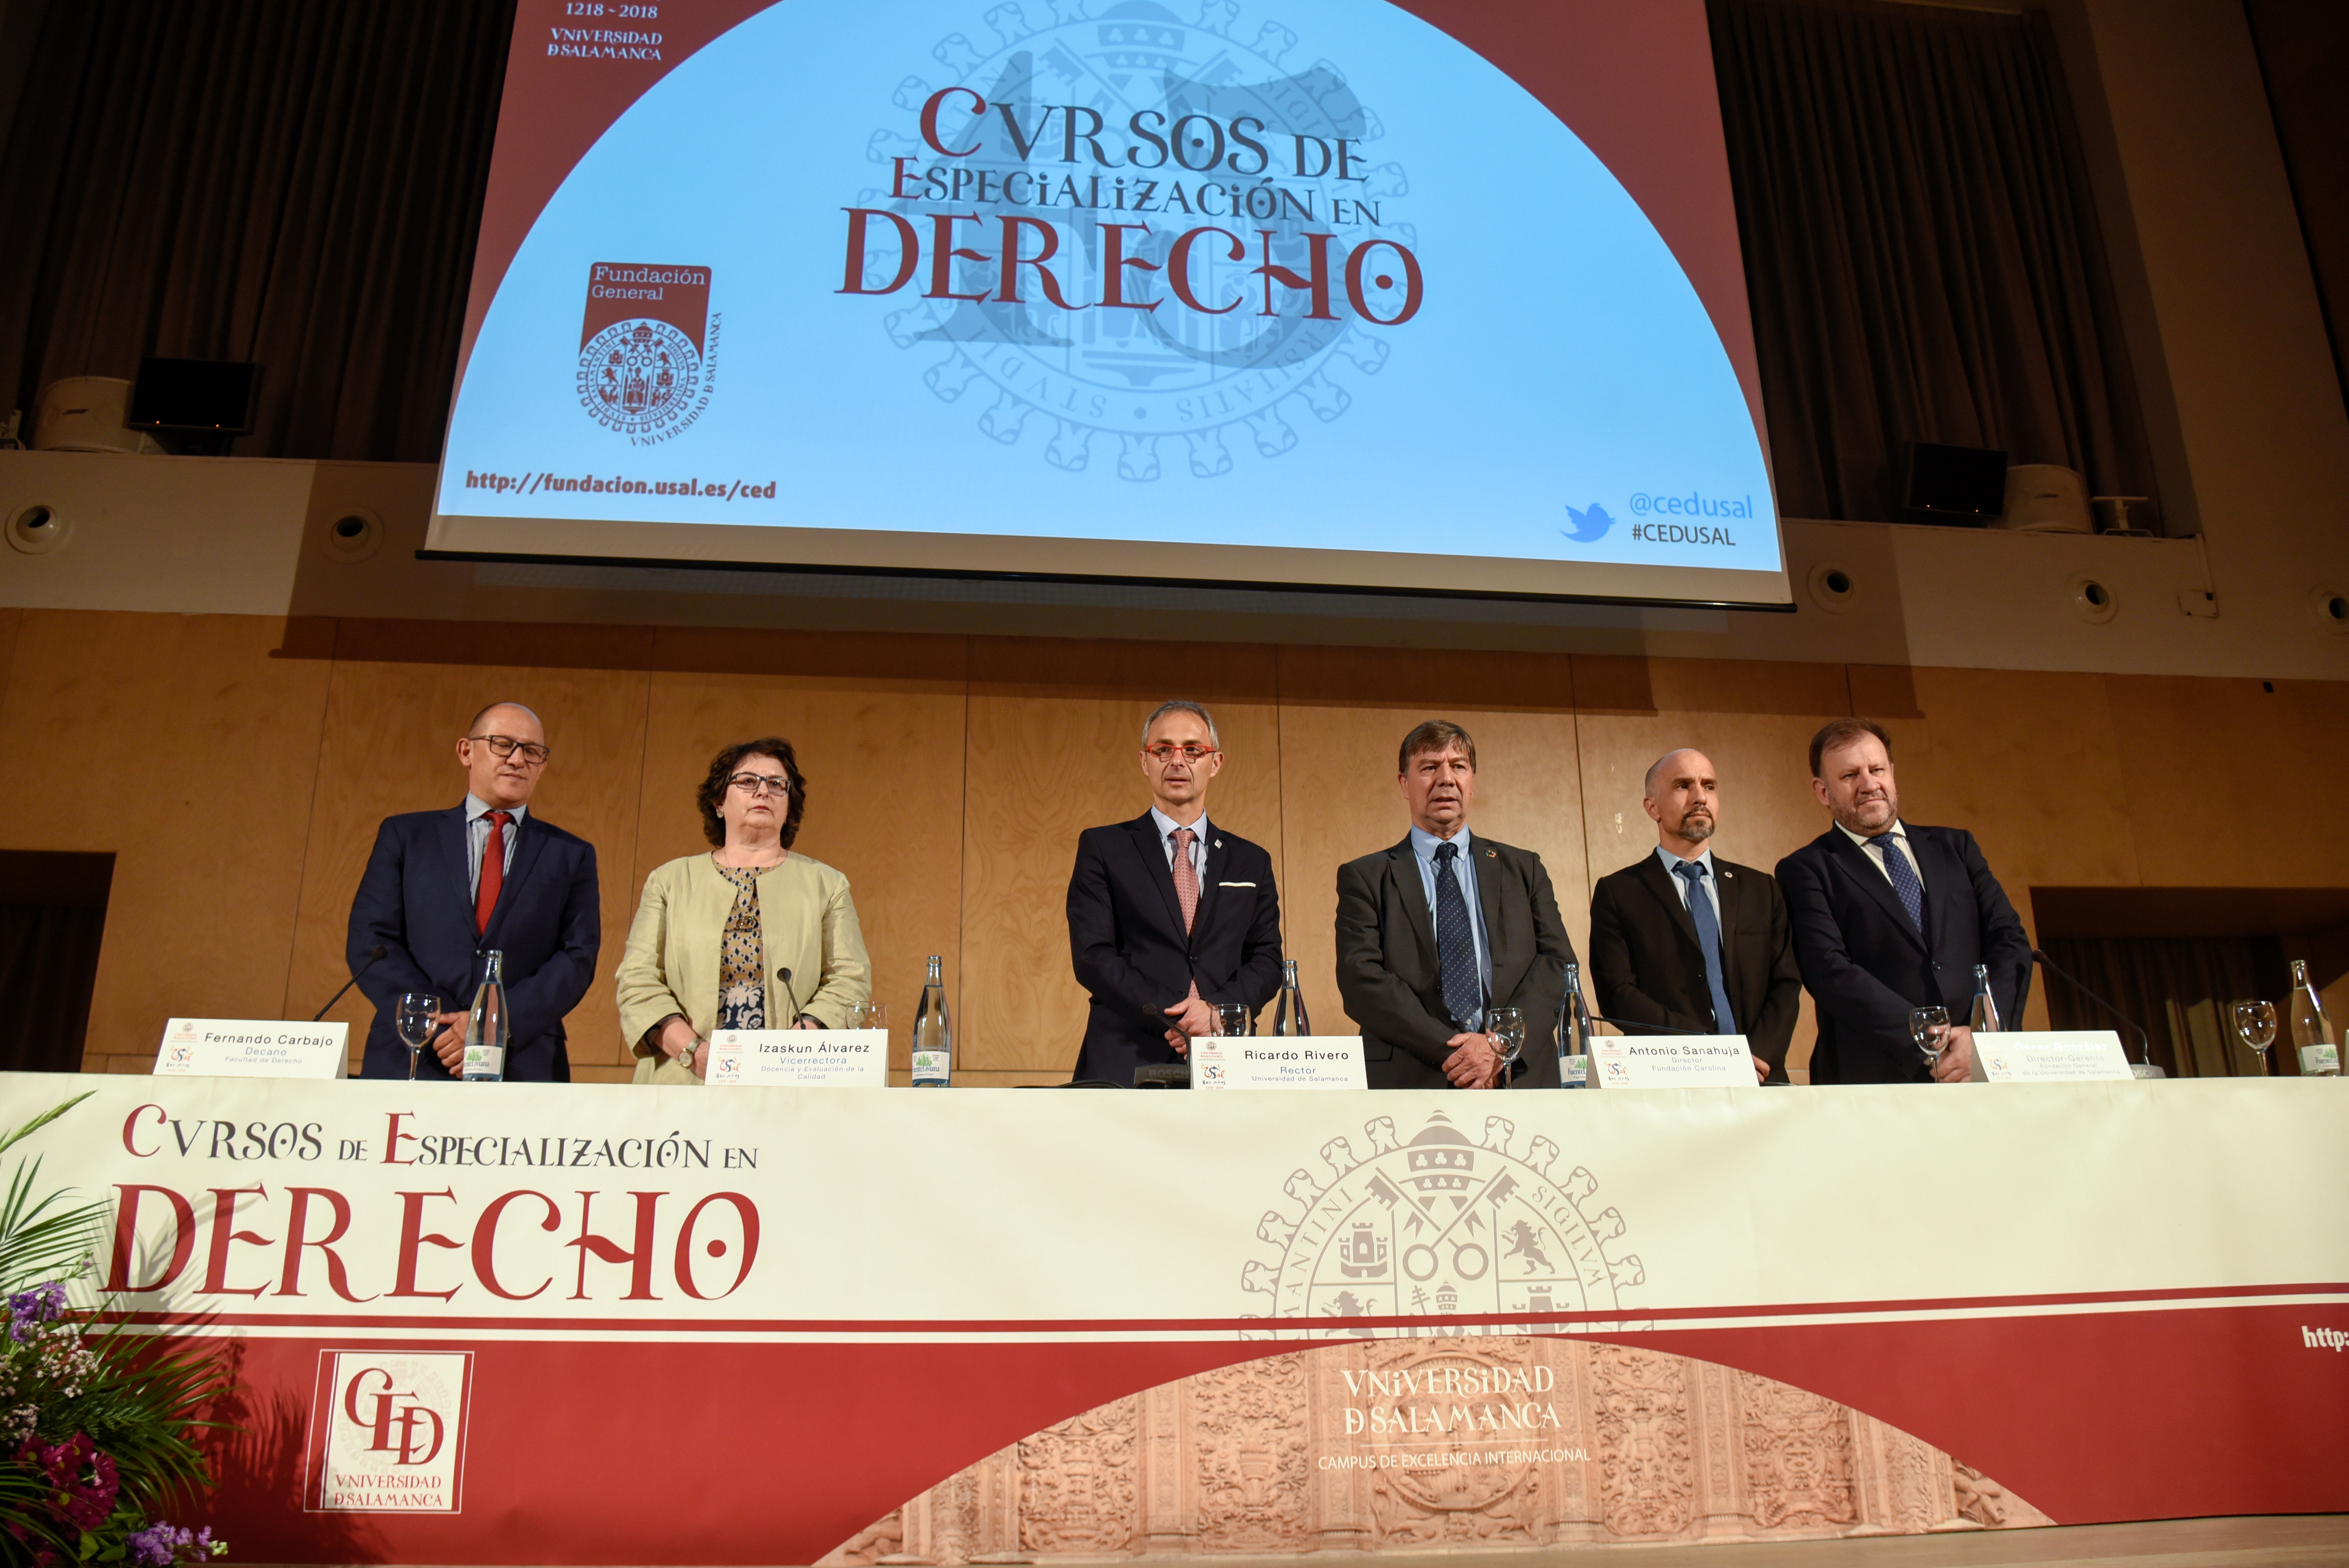 Los Cursos de Especialización en Derecho de la Universidad de Salamanca congregarán a 173 alumnos de 16 nacionalidades